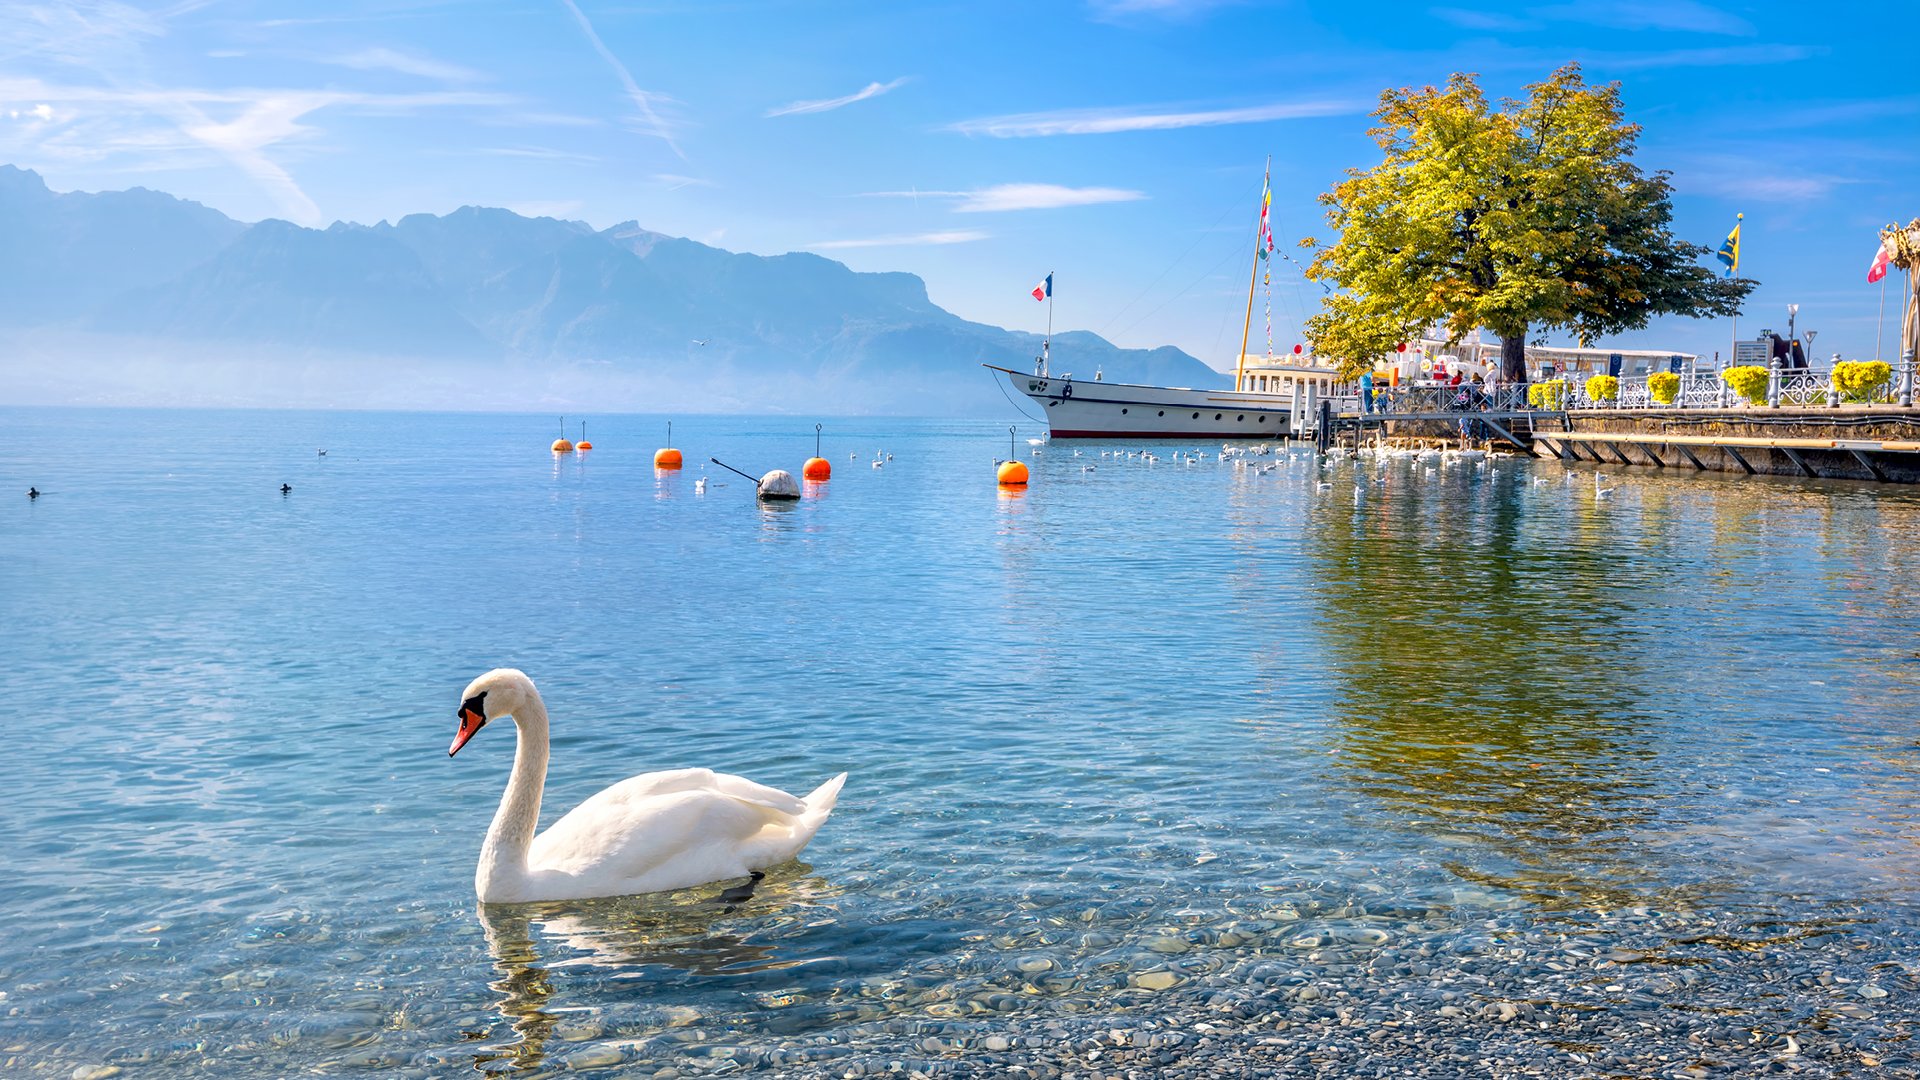 lake Geneva, Switzerland